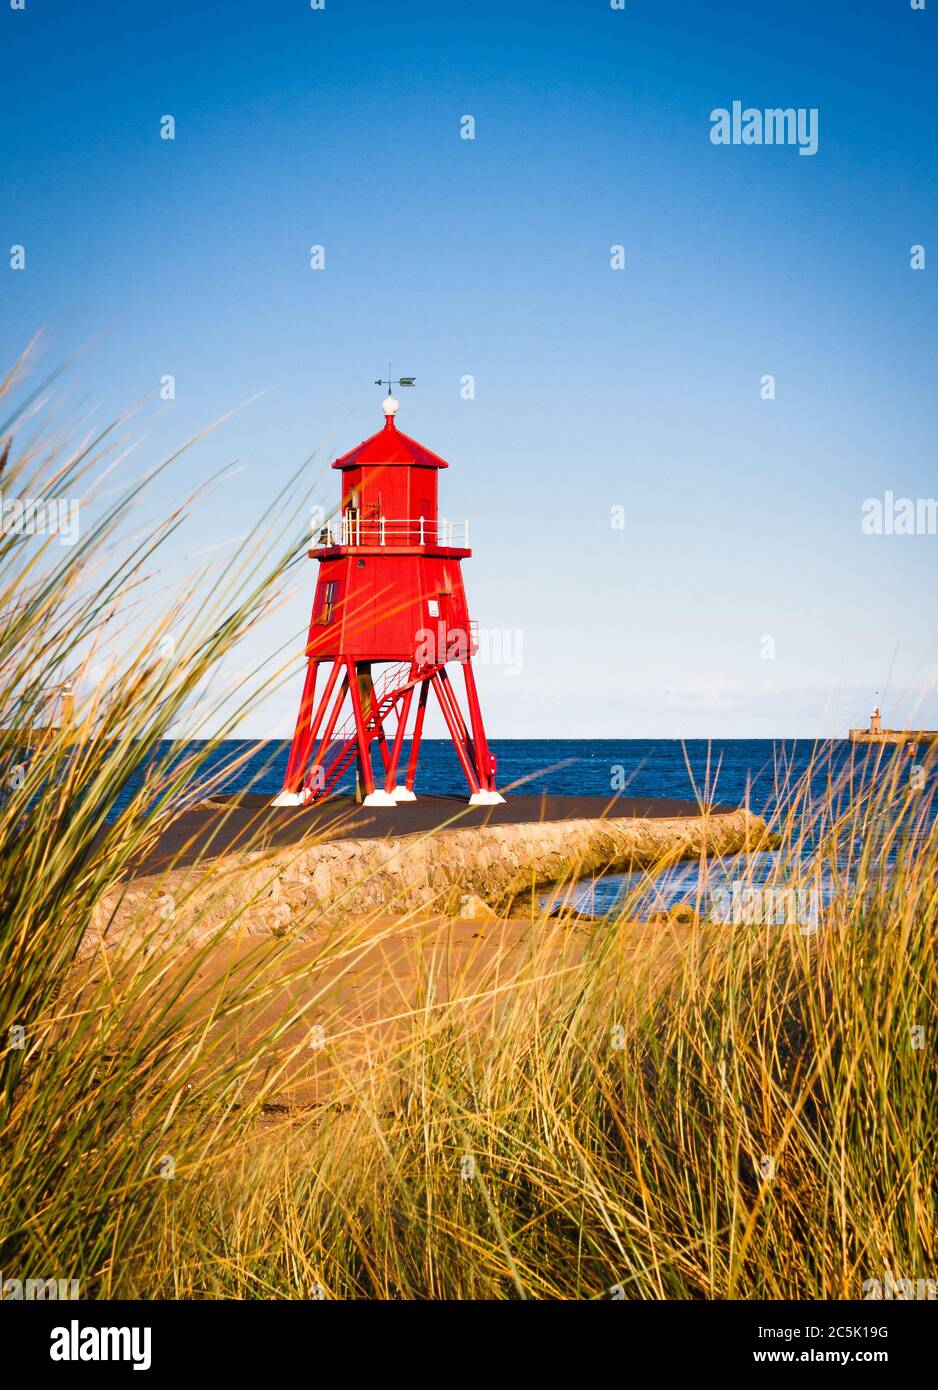 England, Nord-Osten, Tyne&Wear, SouthShields, Little Haven, Pier. Blick durch das Marram Gras und Sanddünen zum roten Leuchtturm und Pier i Stockfoto